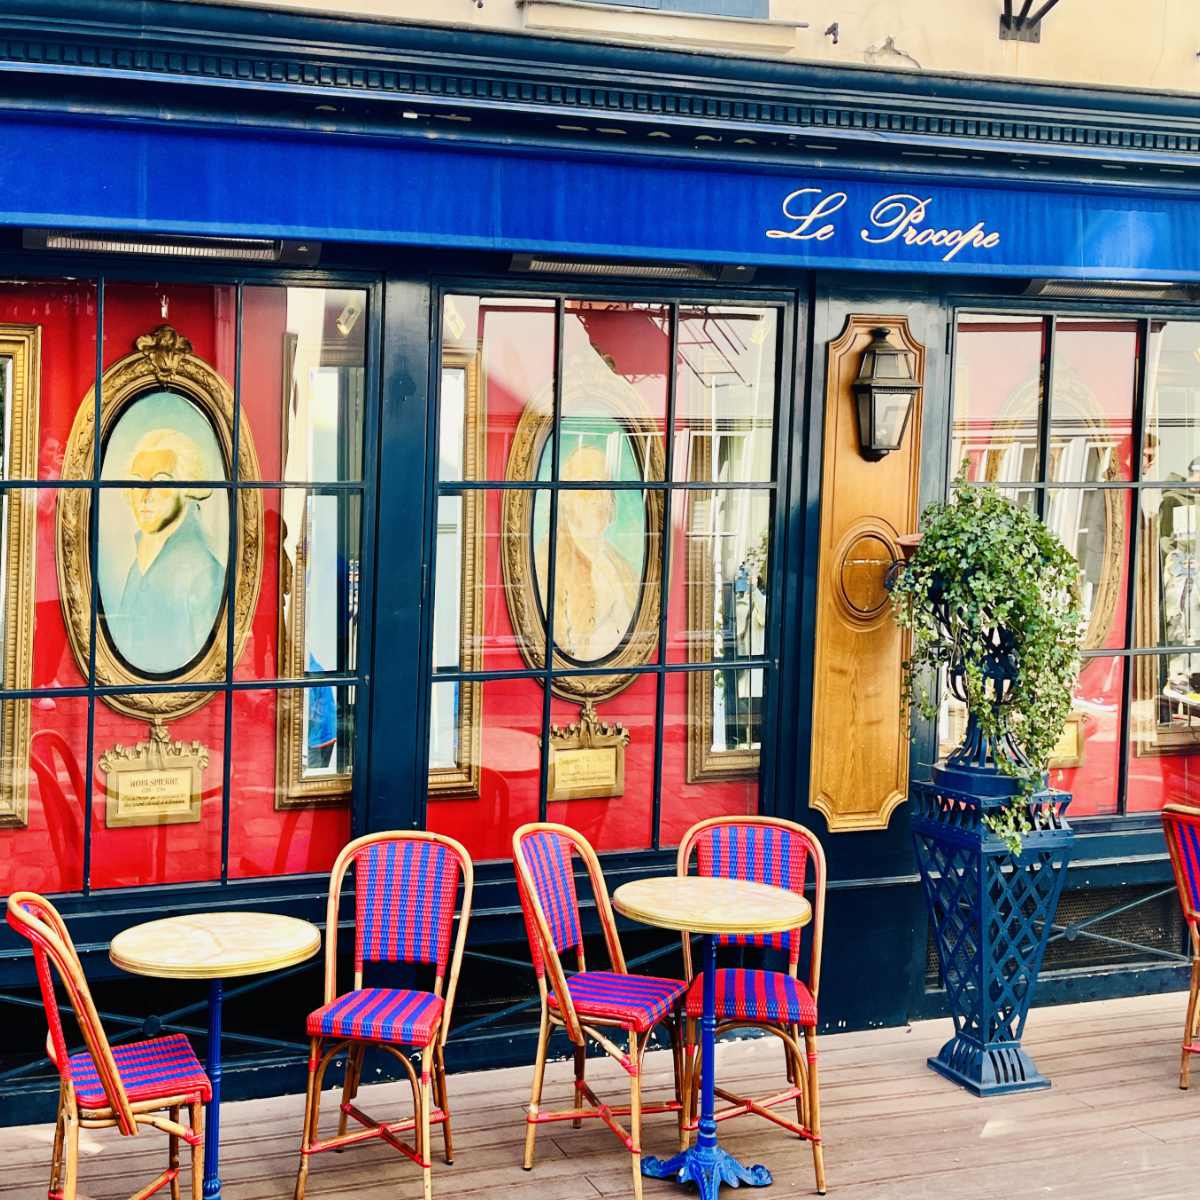 Read more about the article La Procope Café: The Oldest Restaurant in Paris